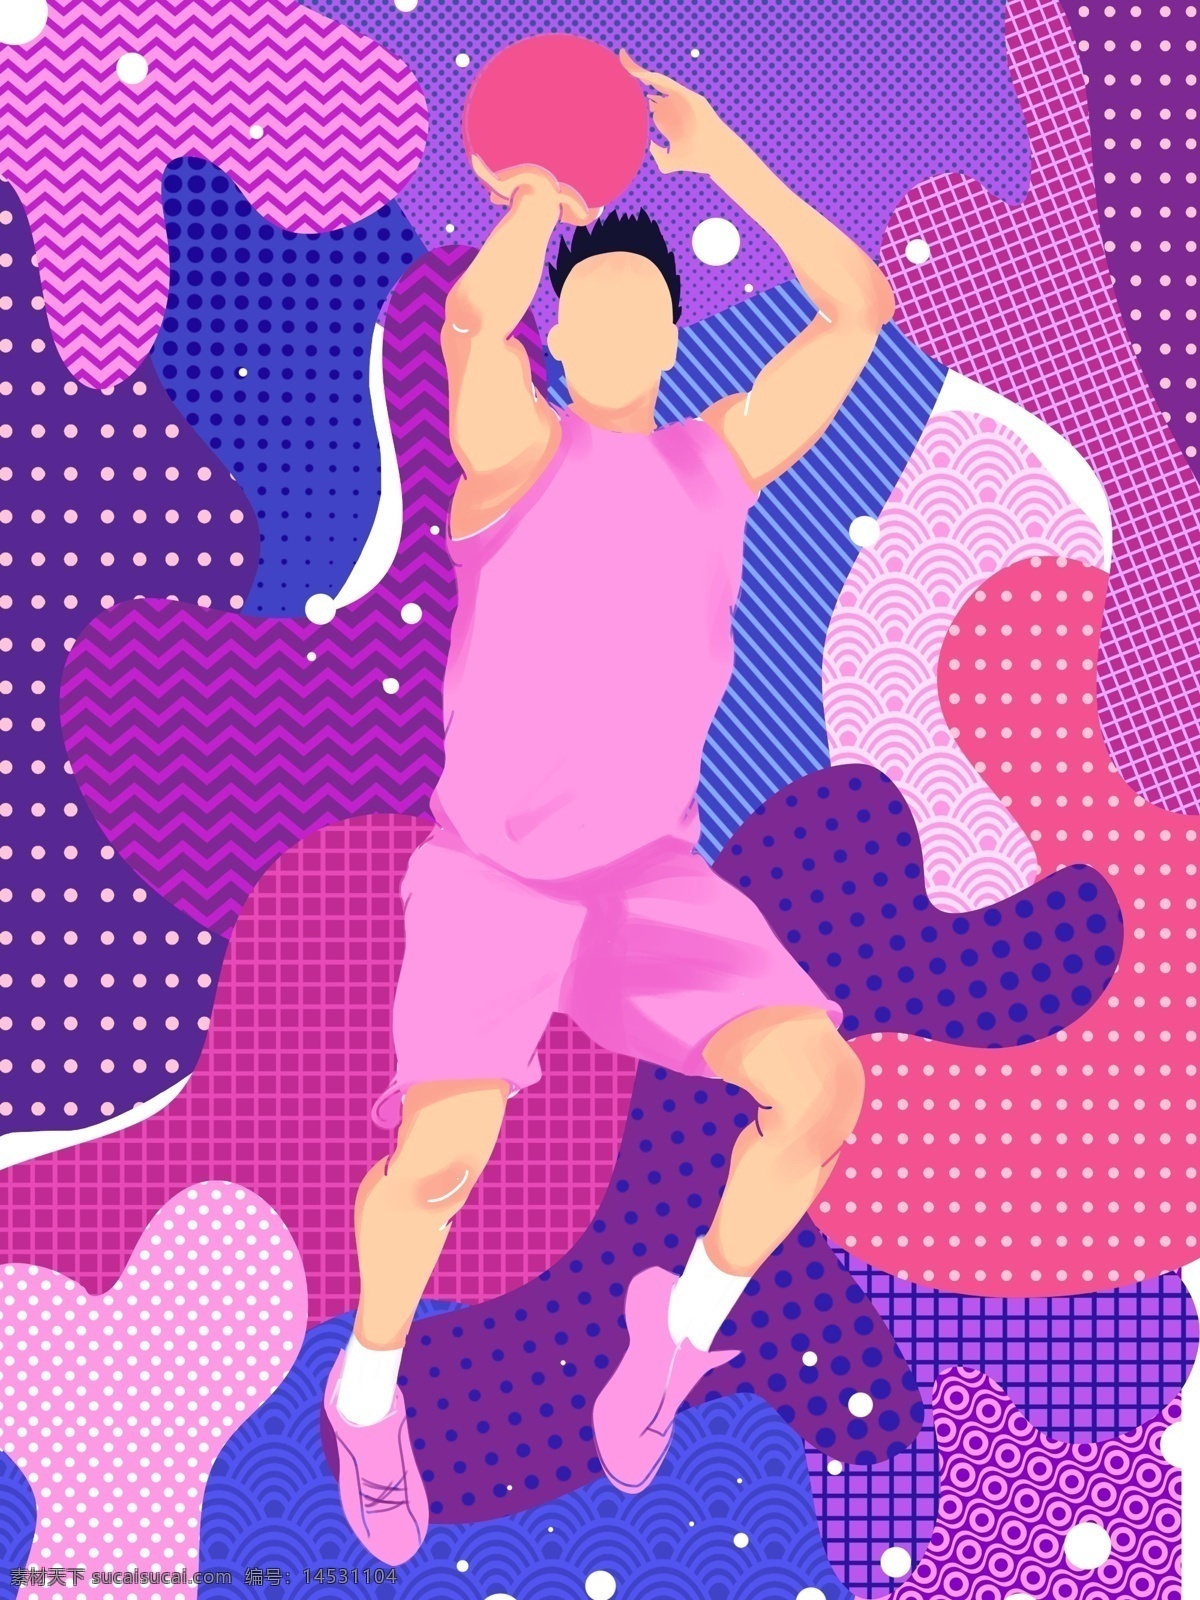 游走 梦 篮球 少年 插画 梦幻 抽象 打篮球 运动 健康 游走的梦 生活方式